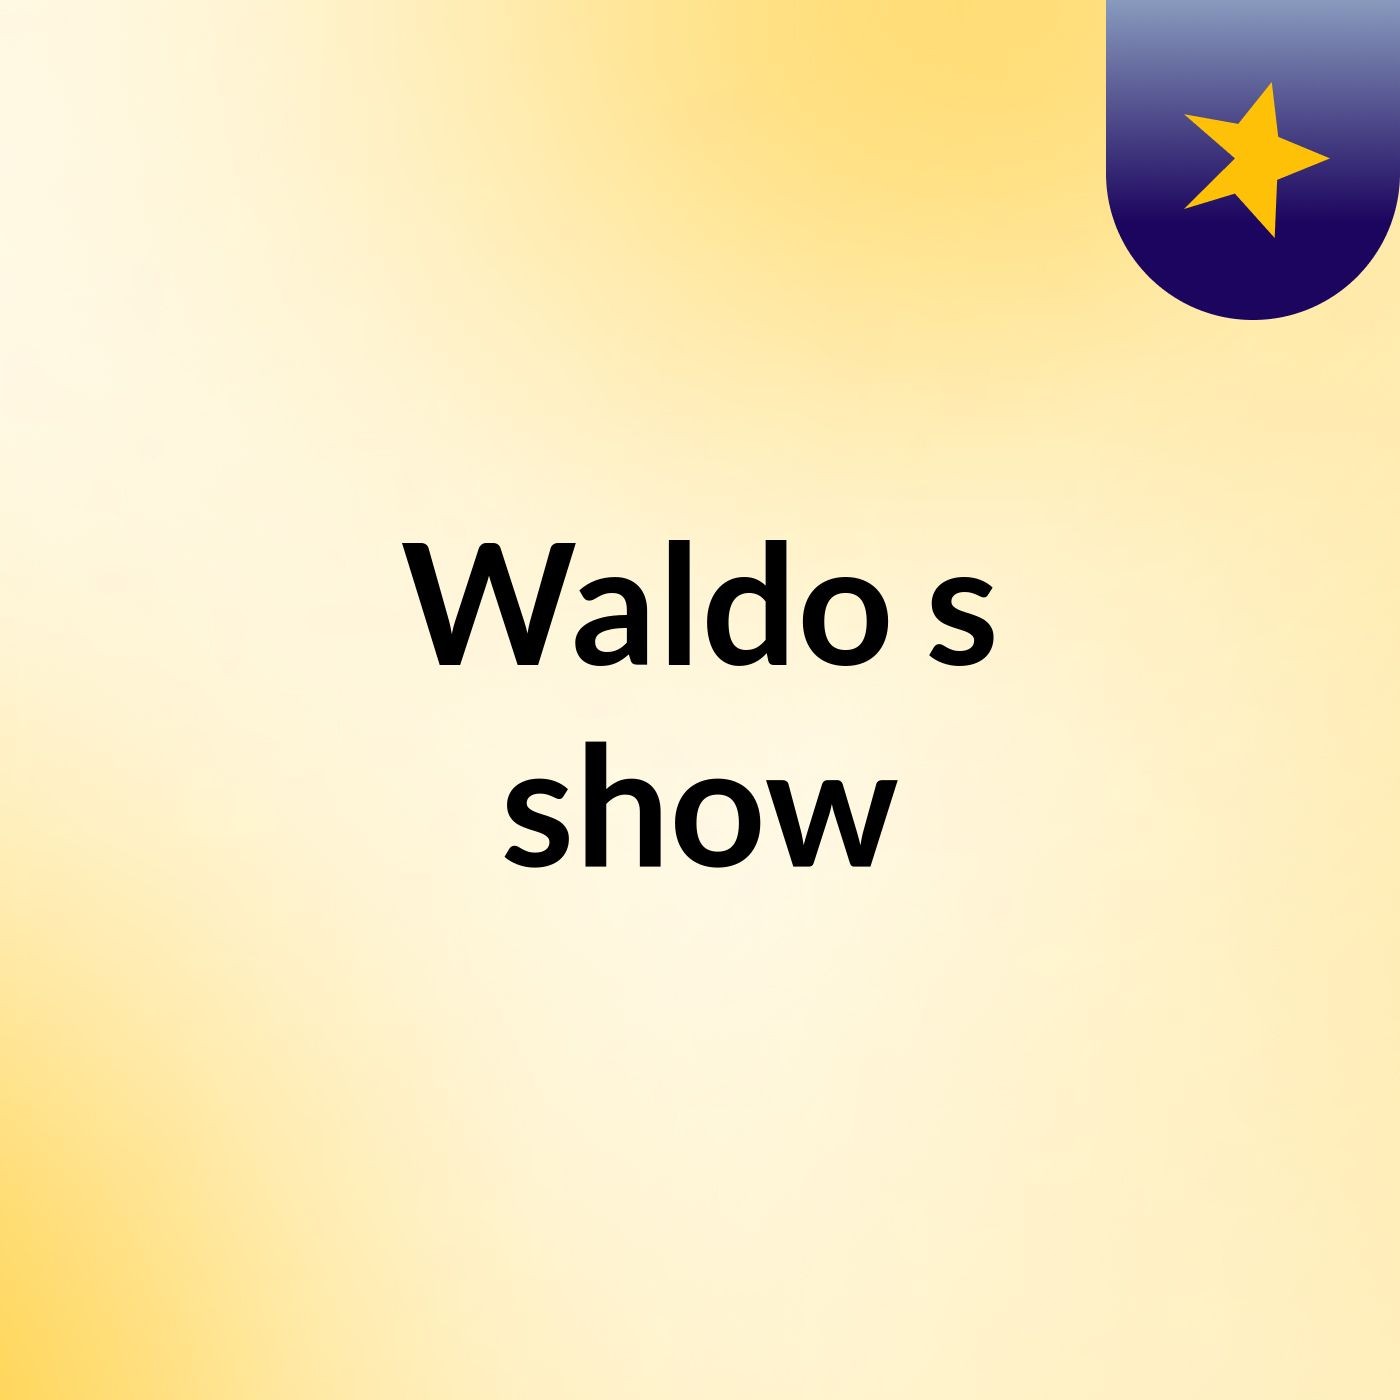 Waldo's show